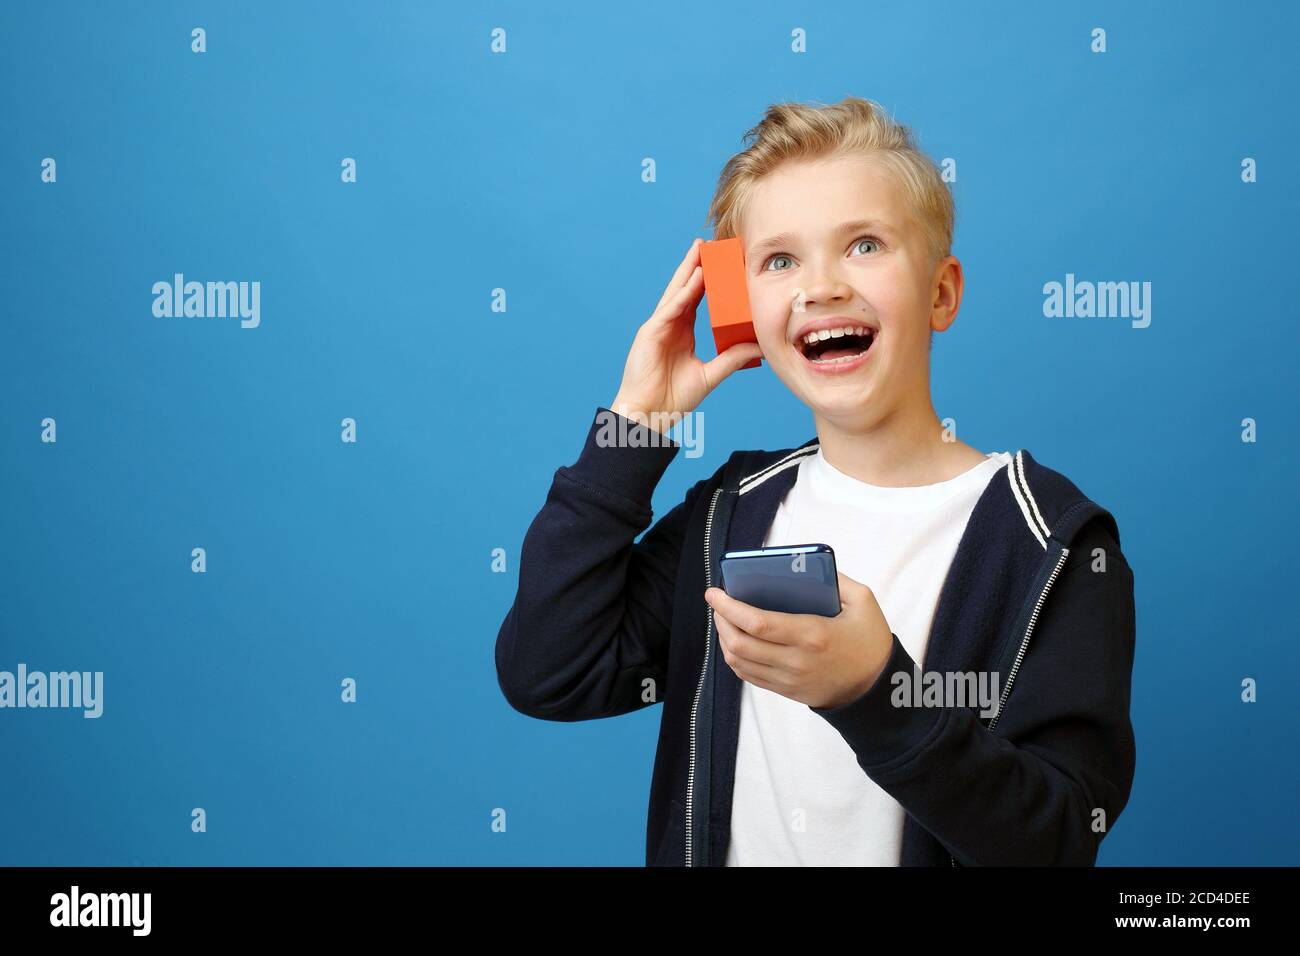 Junge hört Musik aus dem Lautsprecher und dem Telefon. Porträt eines Kindes auf einem farbigen blauen Hintergrund. Emotionen und Gefühle, die durch Faci ausgedrückt werden Stockfoto